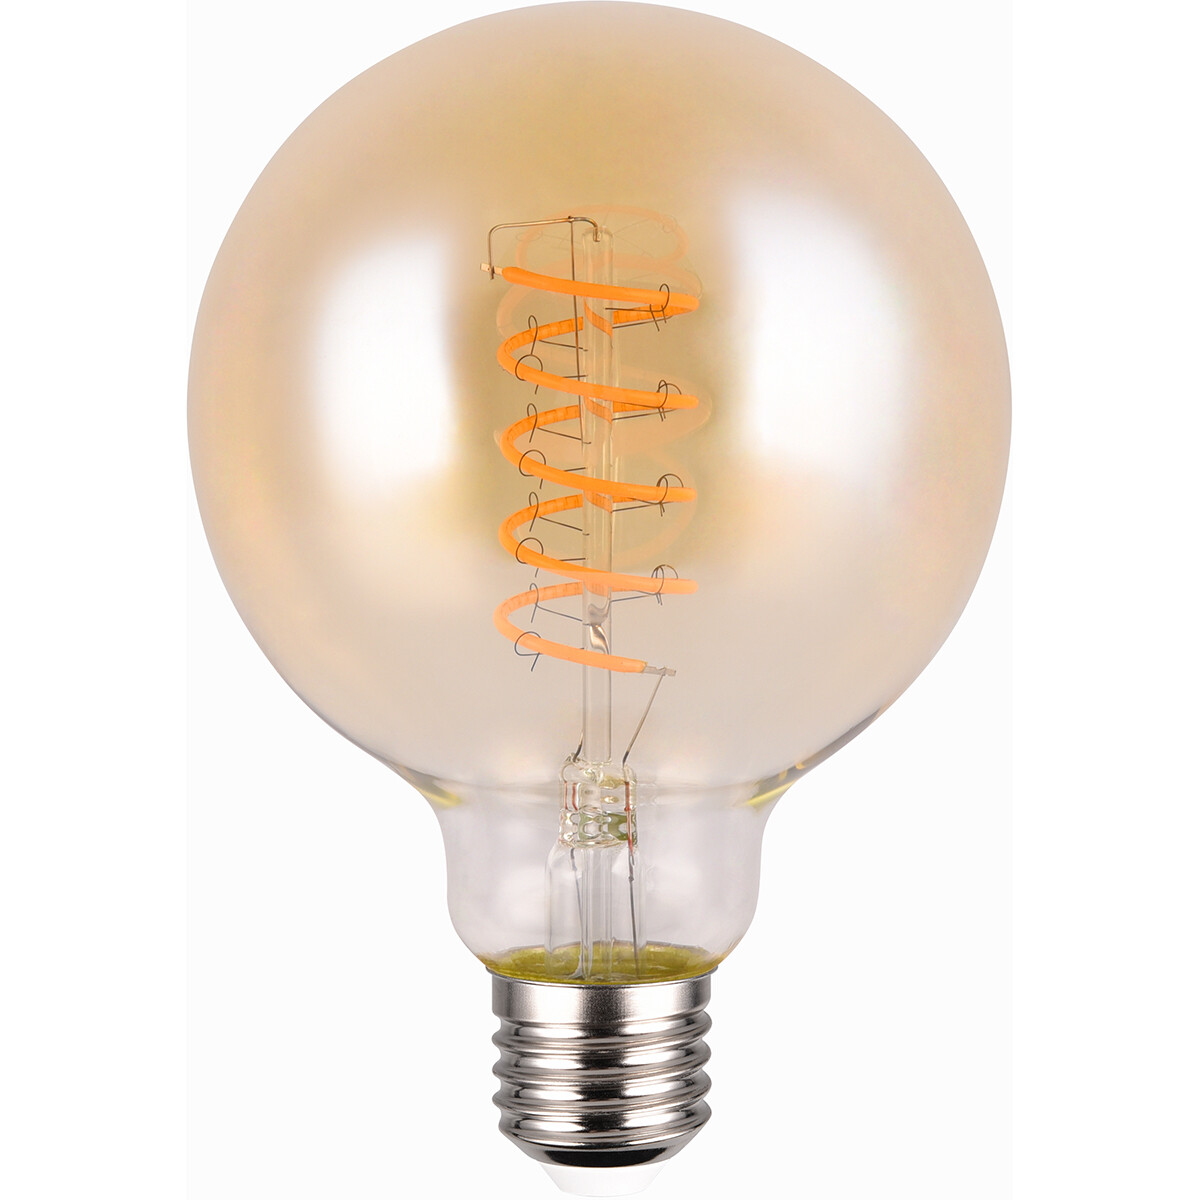 BES LED LED Lamp - Filament - Trion Spiro - E27 Fitting - 7W - Zeer Warm Wit - 1800K - Dimbaar - 400 lumen